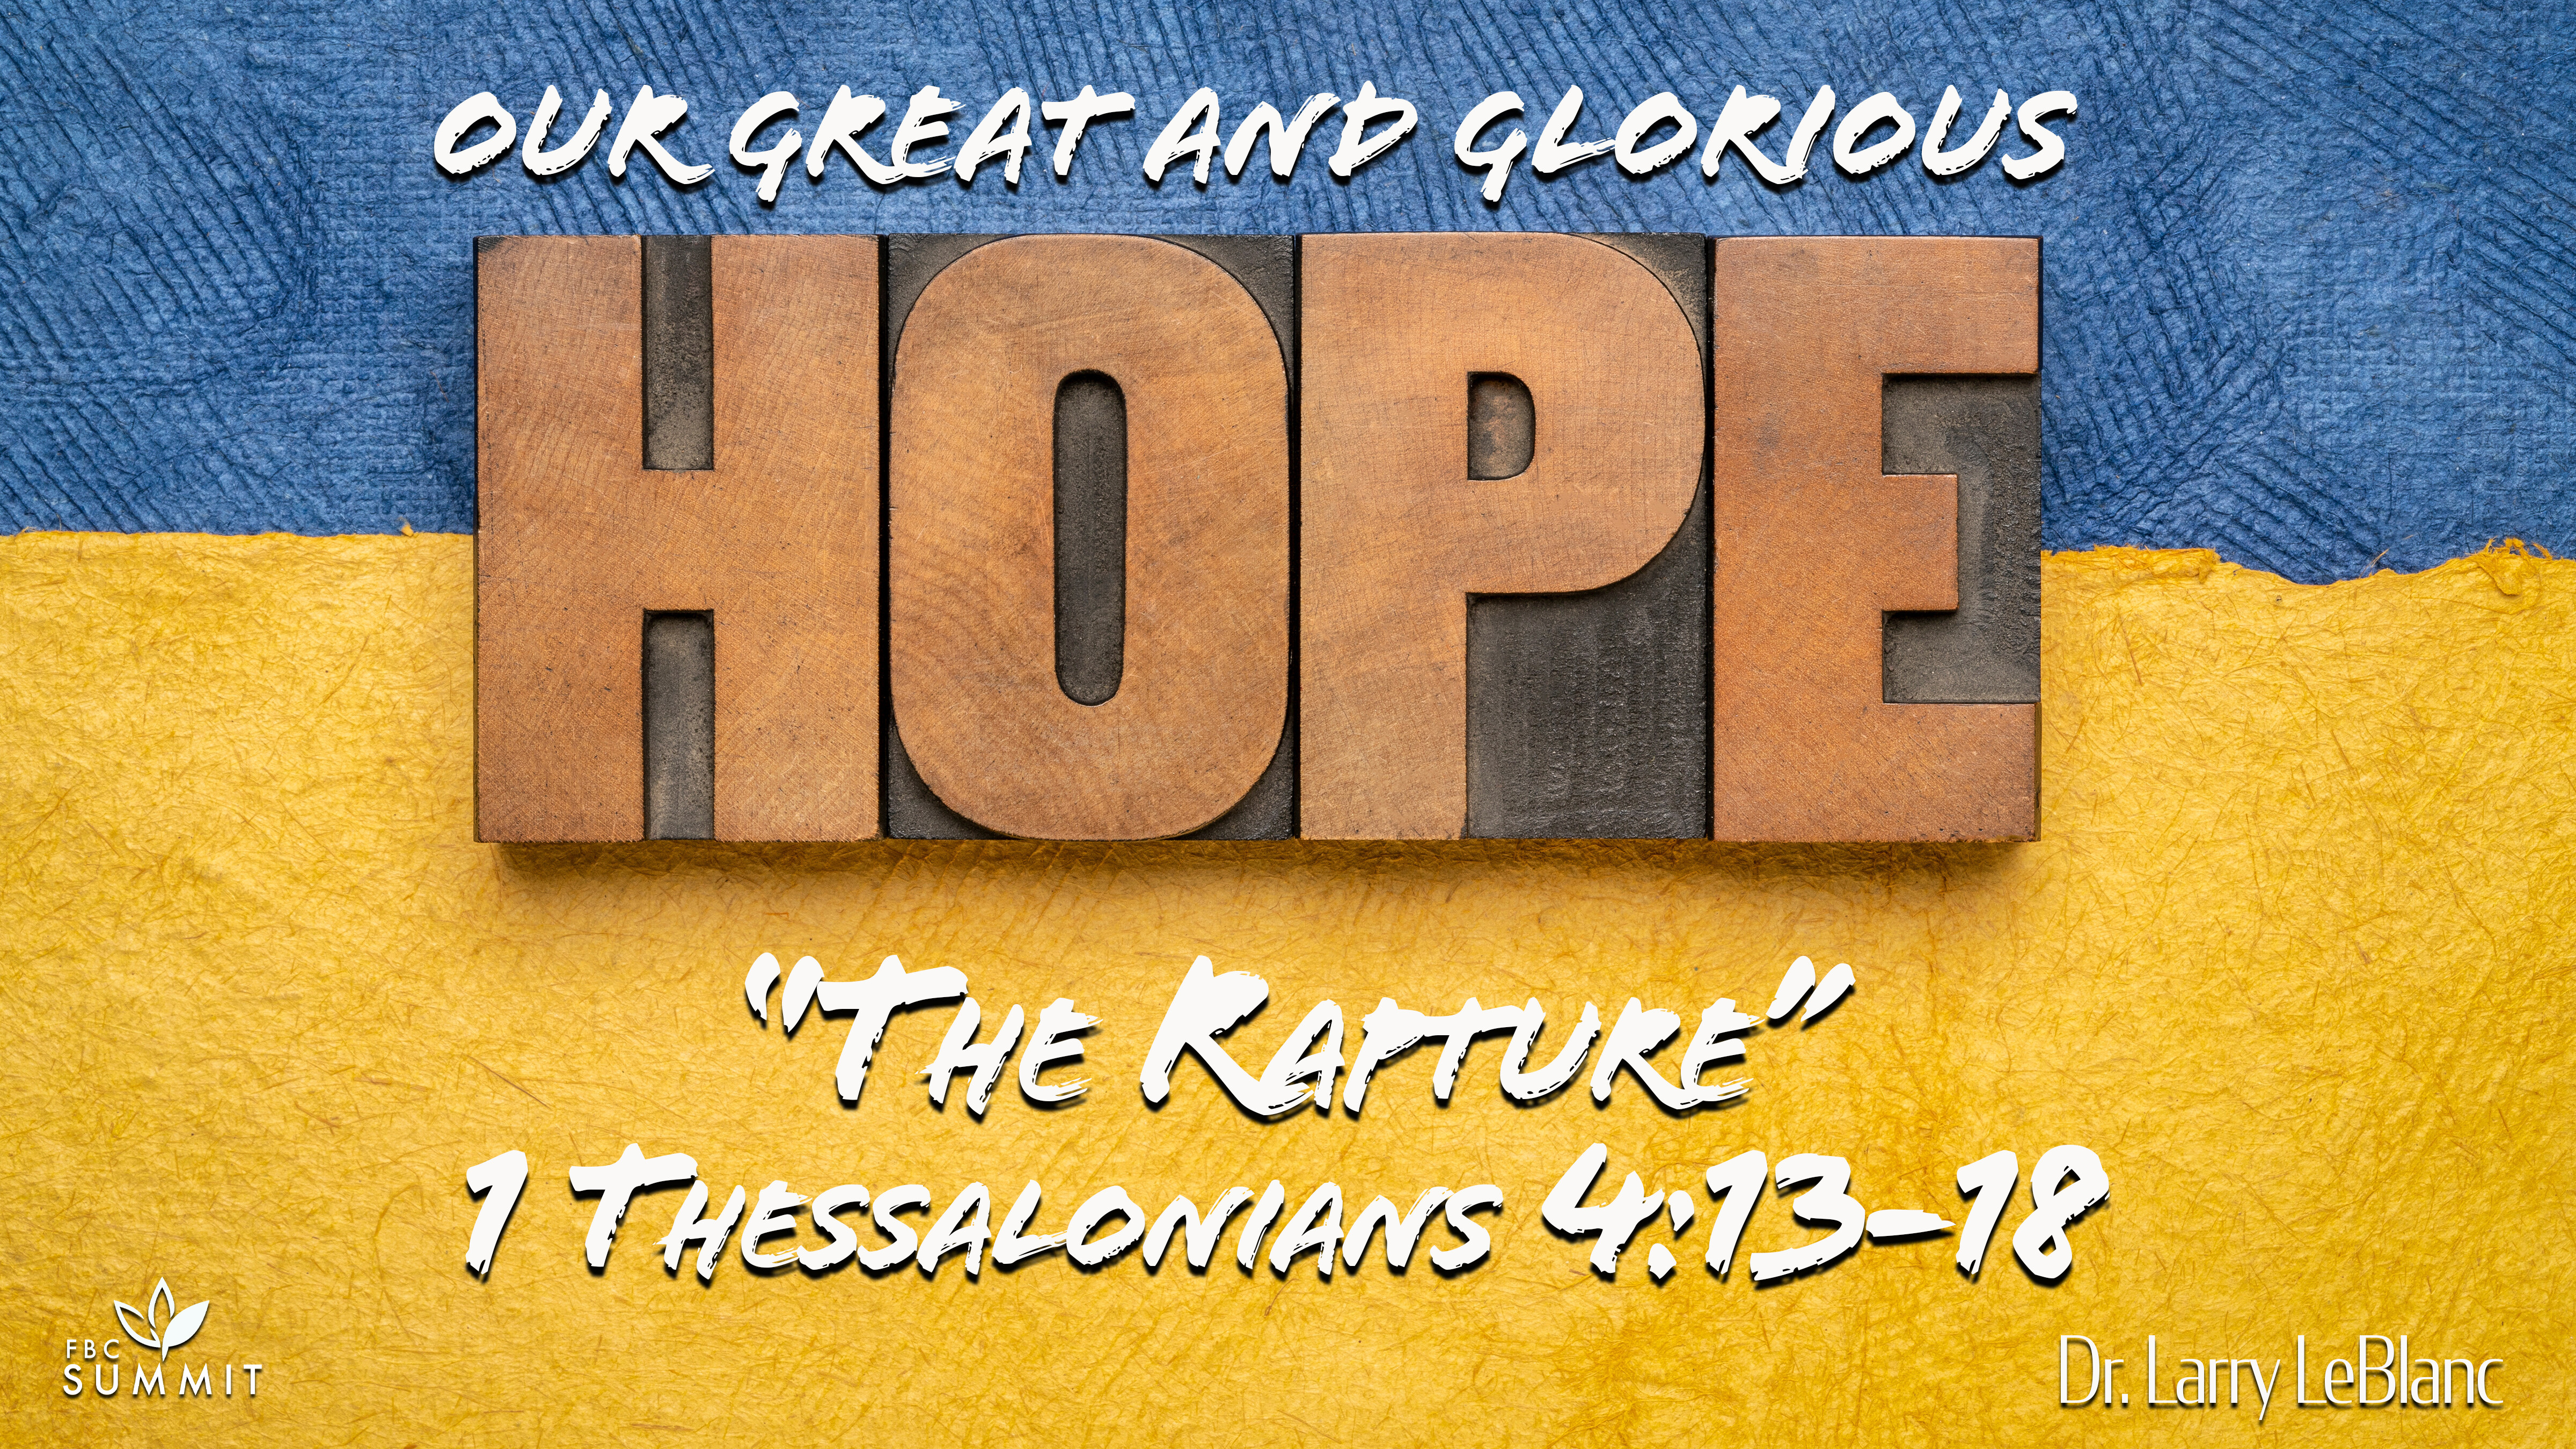 "The Rapture" 1 Thessalonians 4:13-18 // Dr. Larry LeBlanc